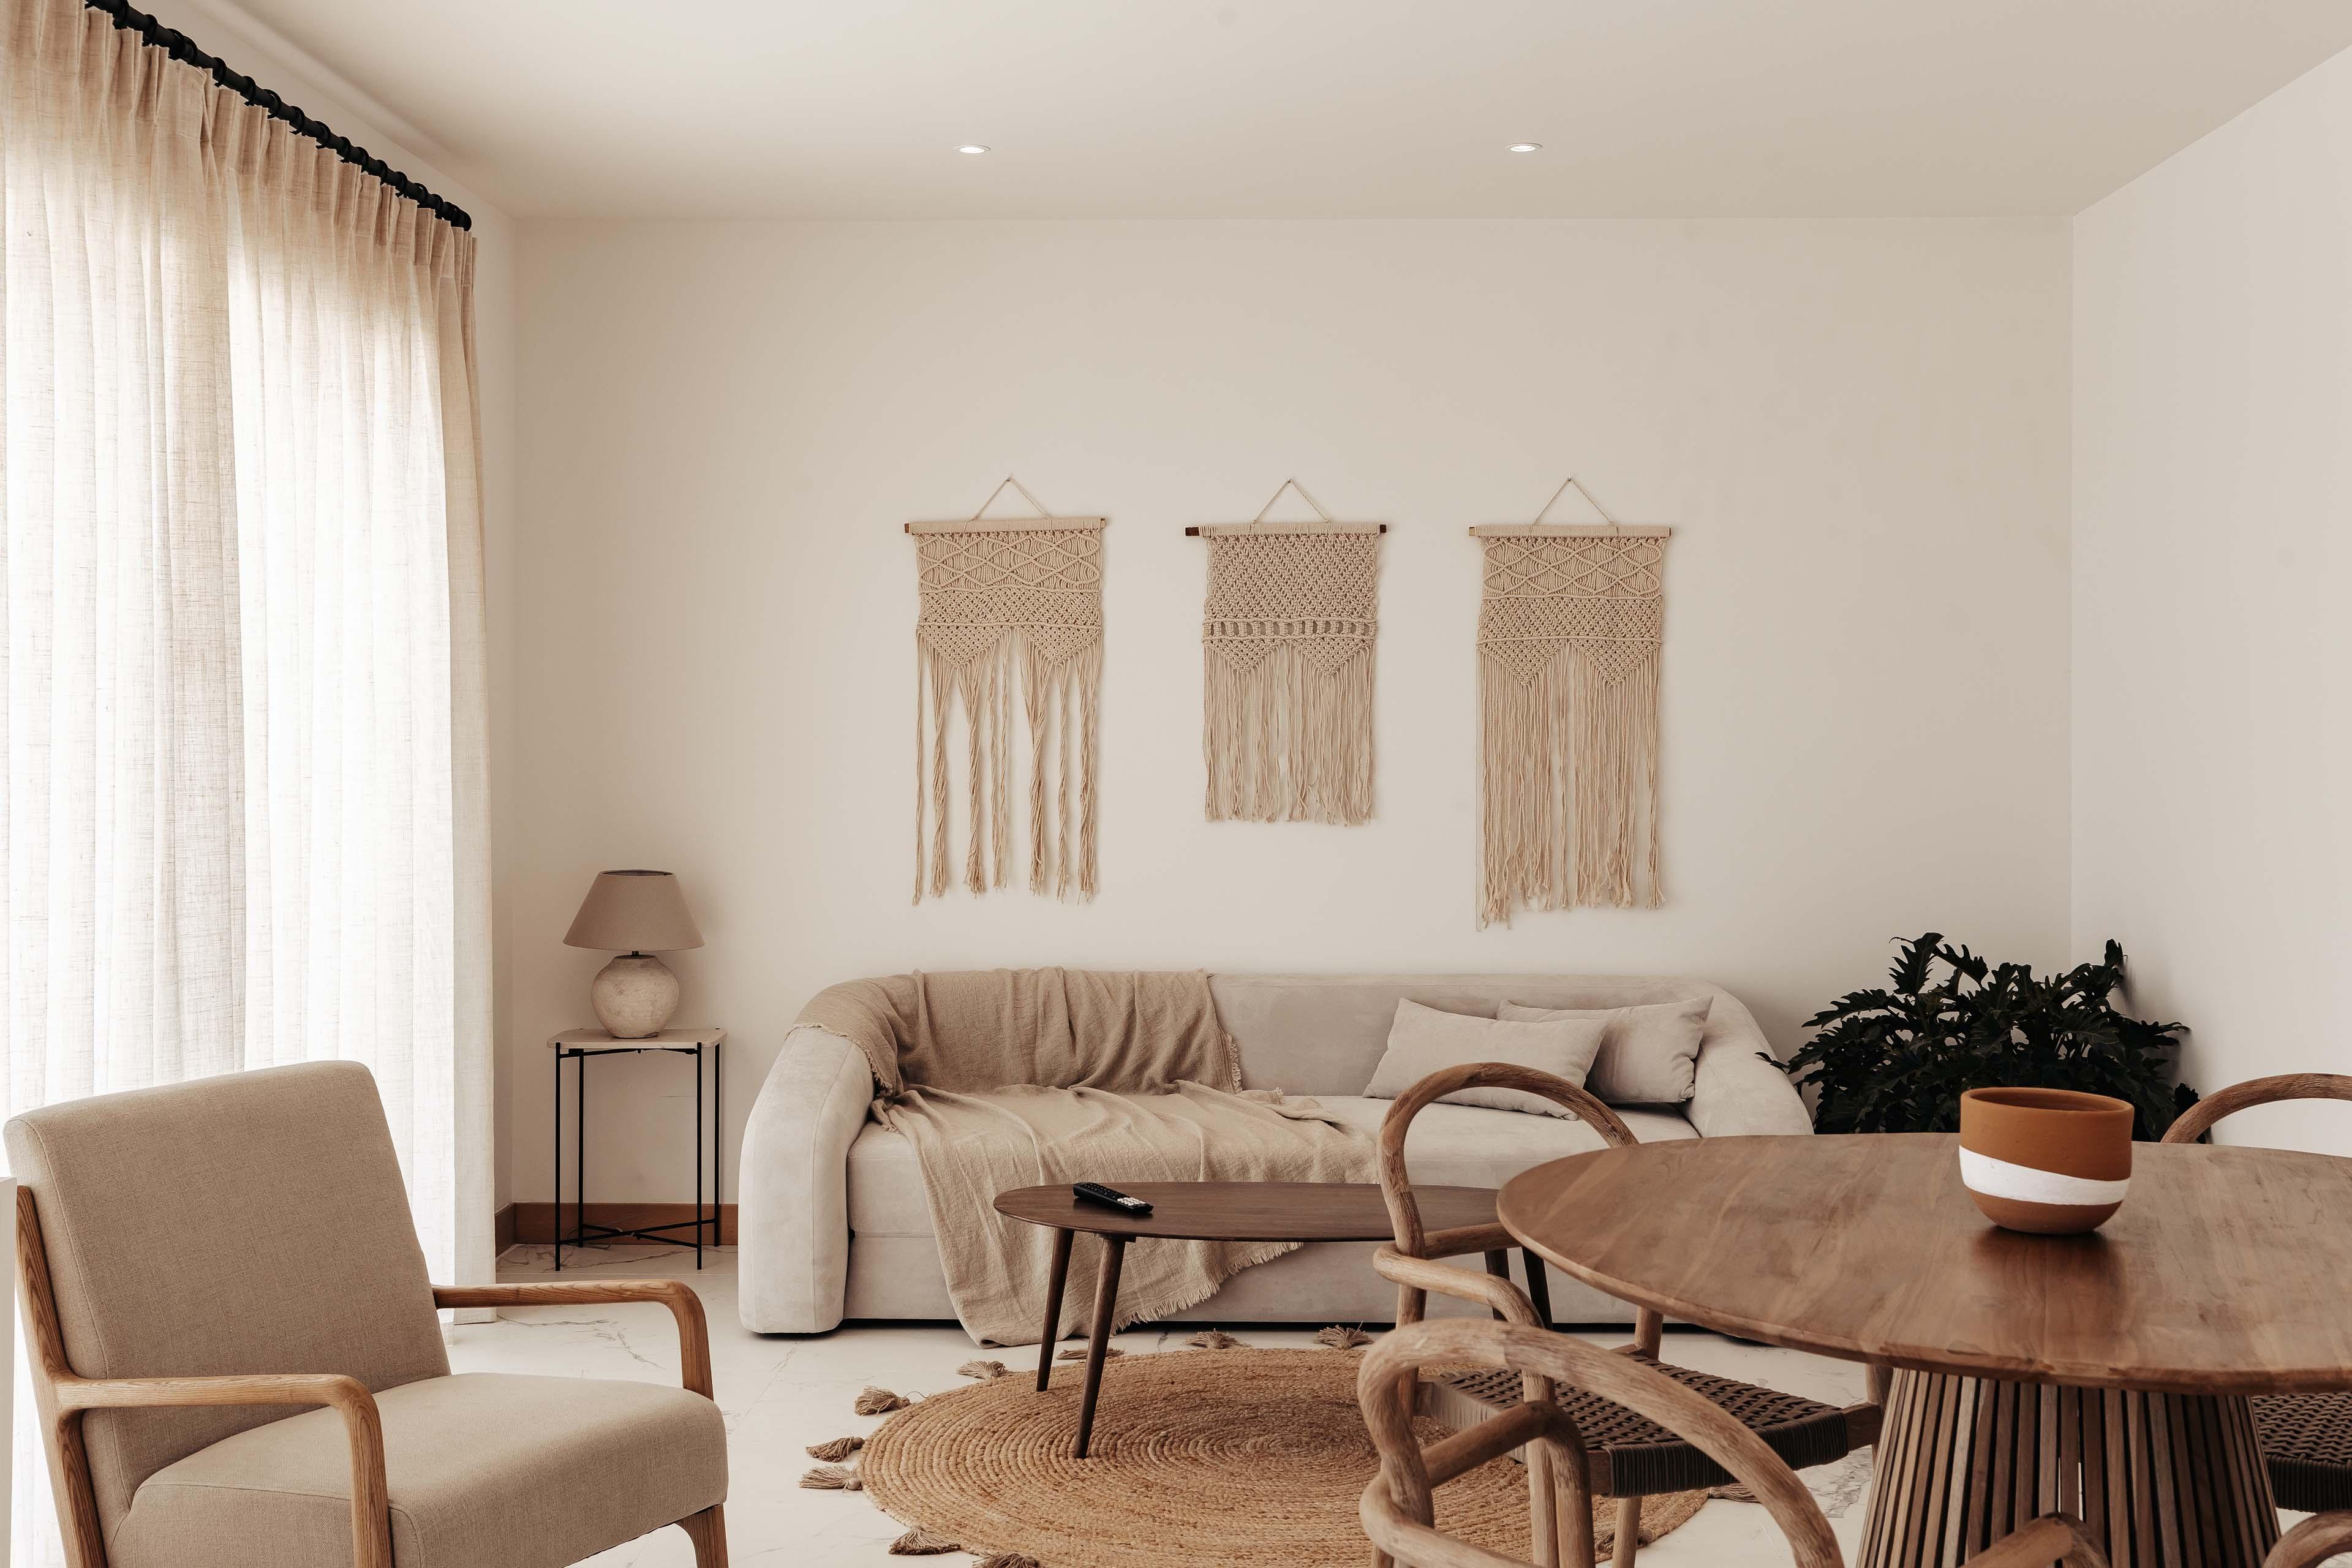 a warmth, cozy apartment interior